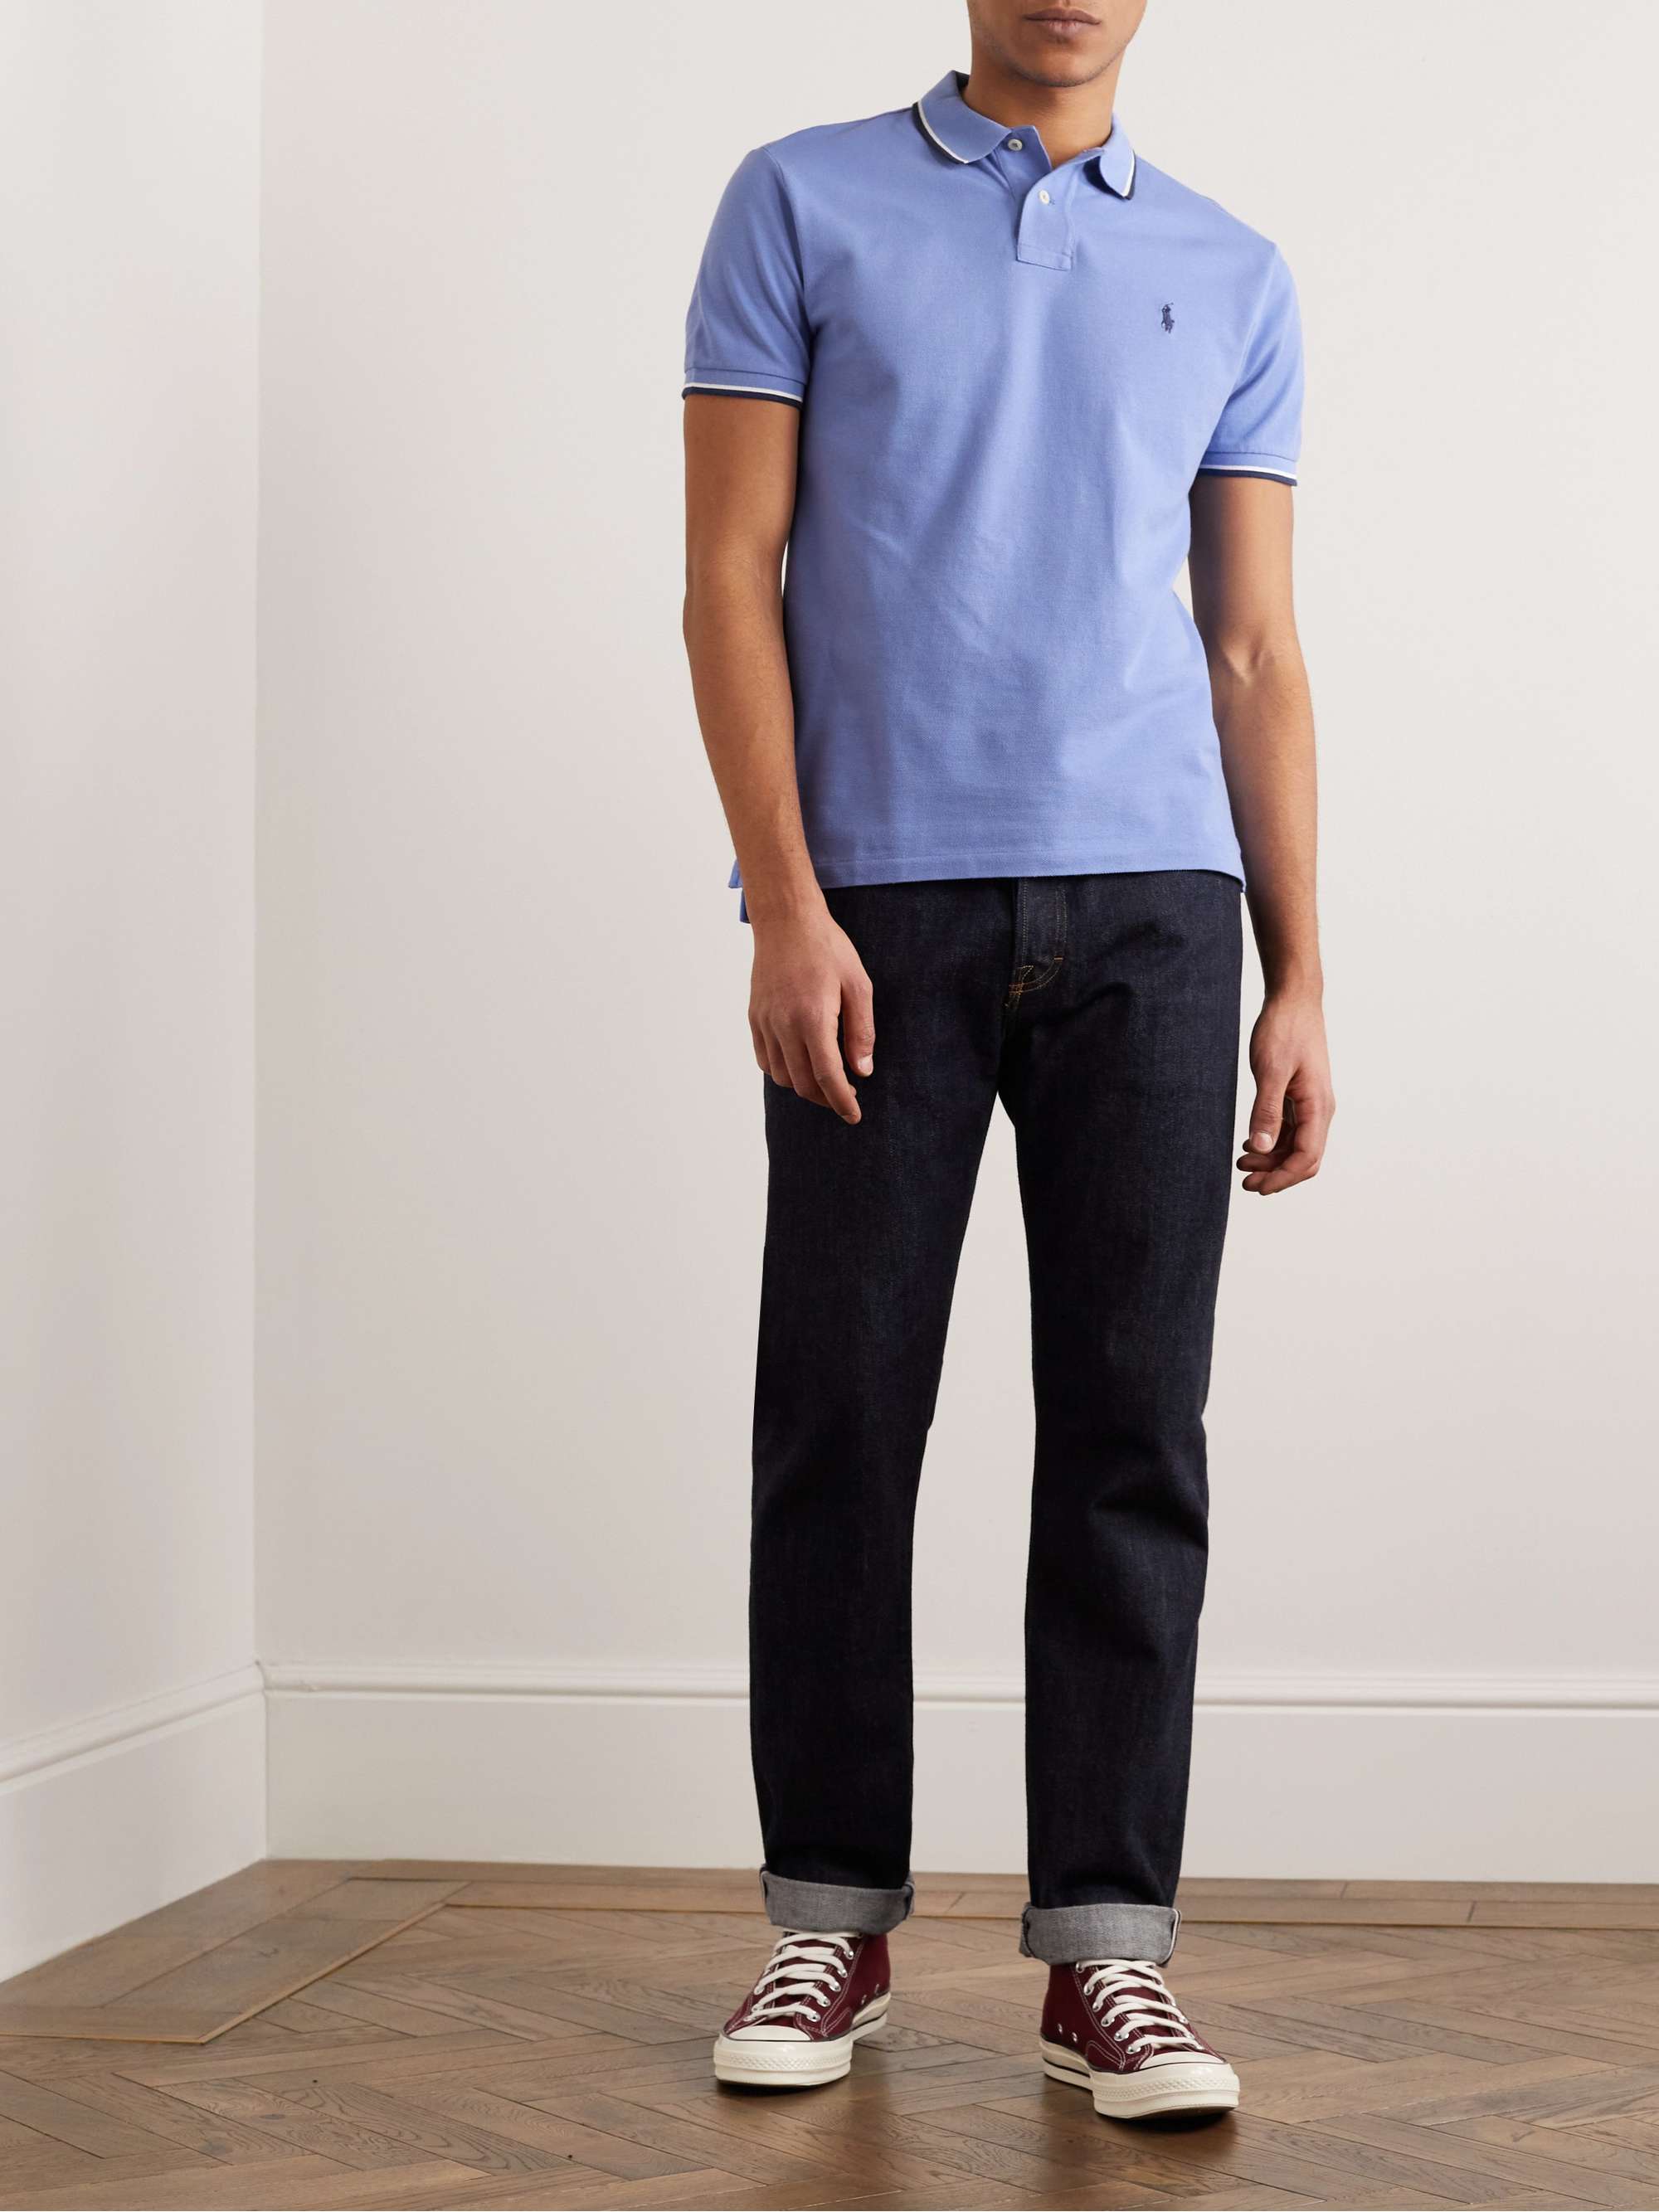 POLO RALPH LAUREN Contrast-Tipped Cotton-Piqué Polo Shirt | MR PORTER